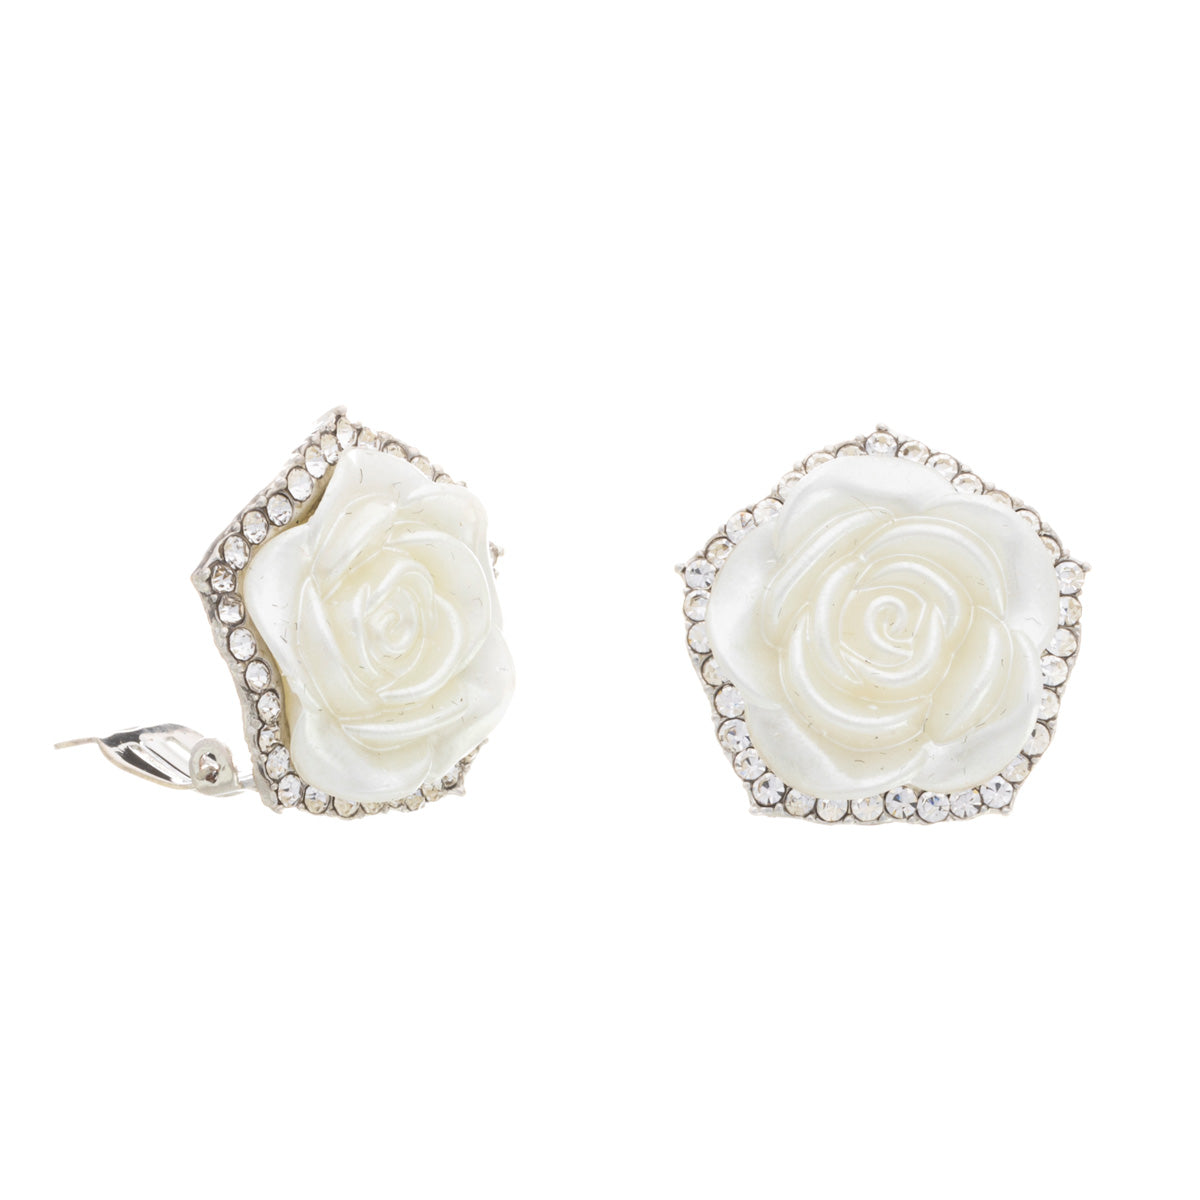 Rose clip earrings